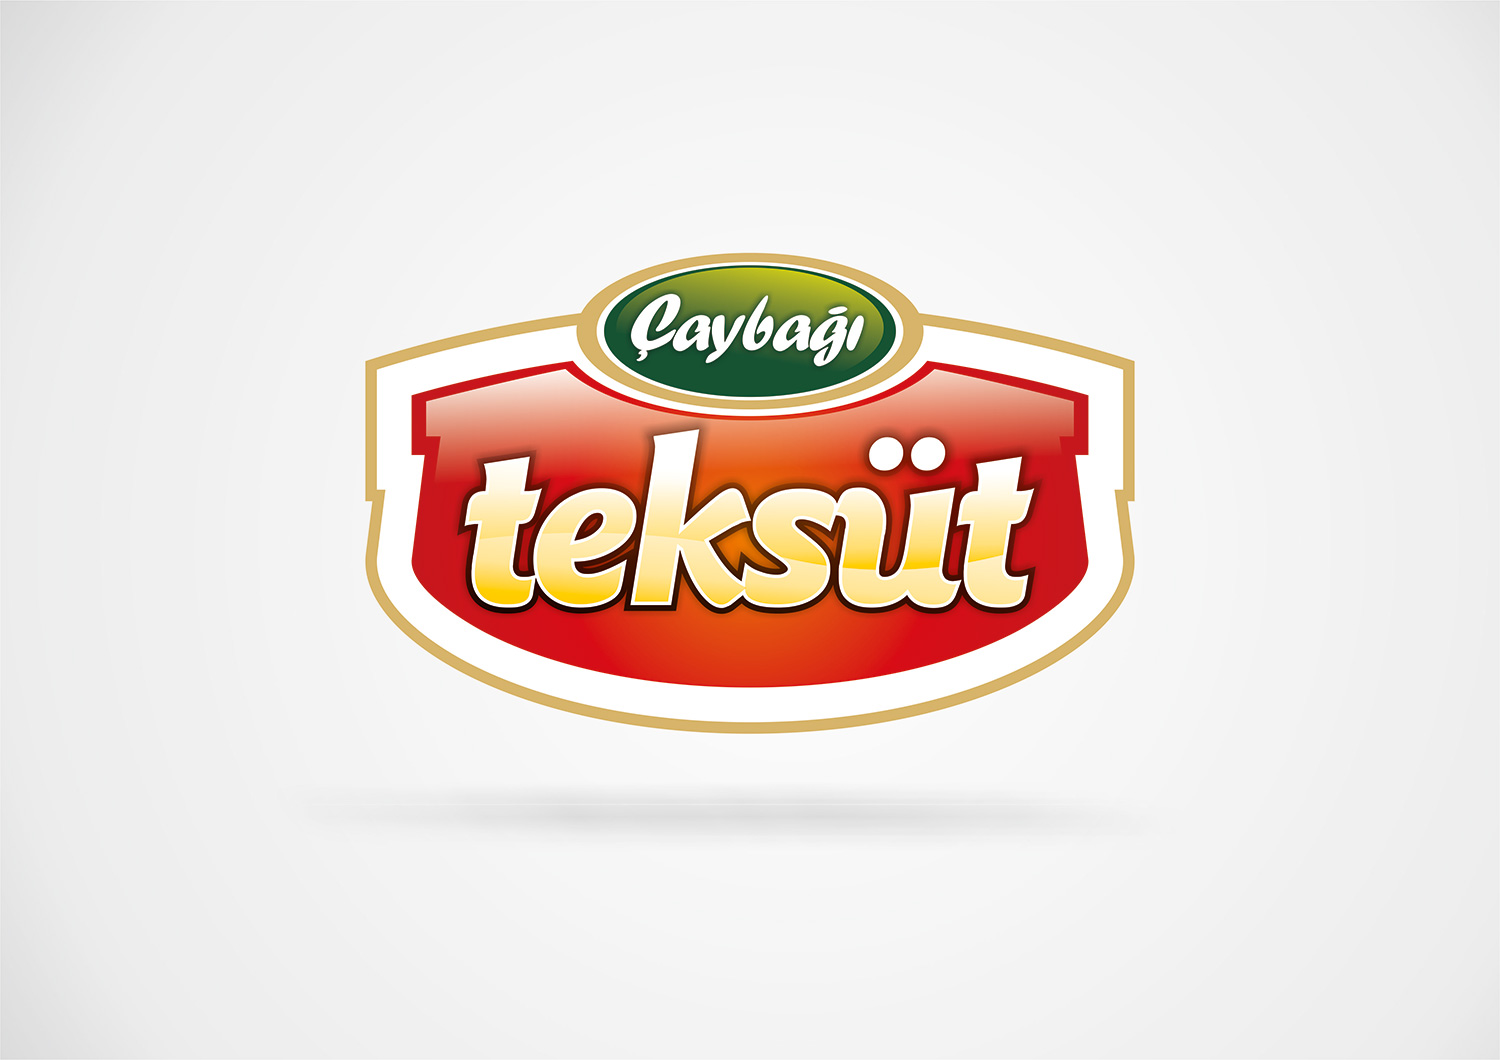 caybagi teksut logo